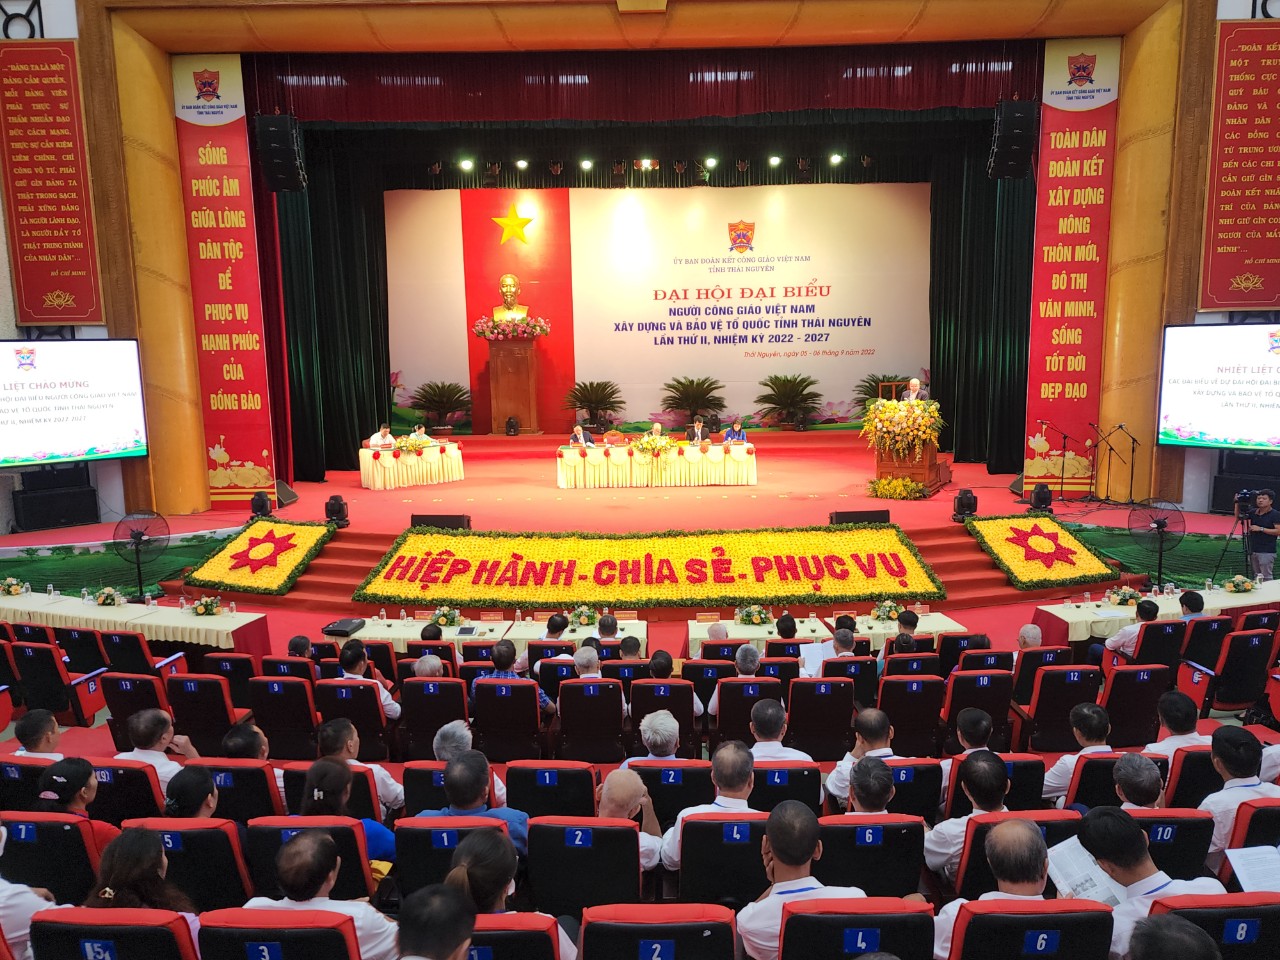 Đại hội đại biểu người Công giáo Việt Nam xây dựng và bảo vệ Tổ quốc tỉnh Thái Nguyên lần thứ II, nhiệm kỳ 2022-2027